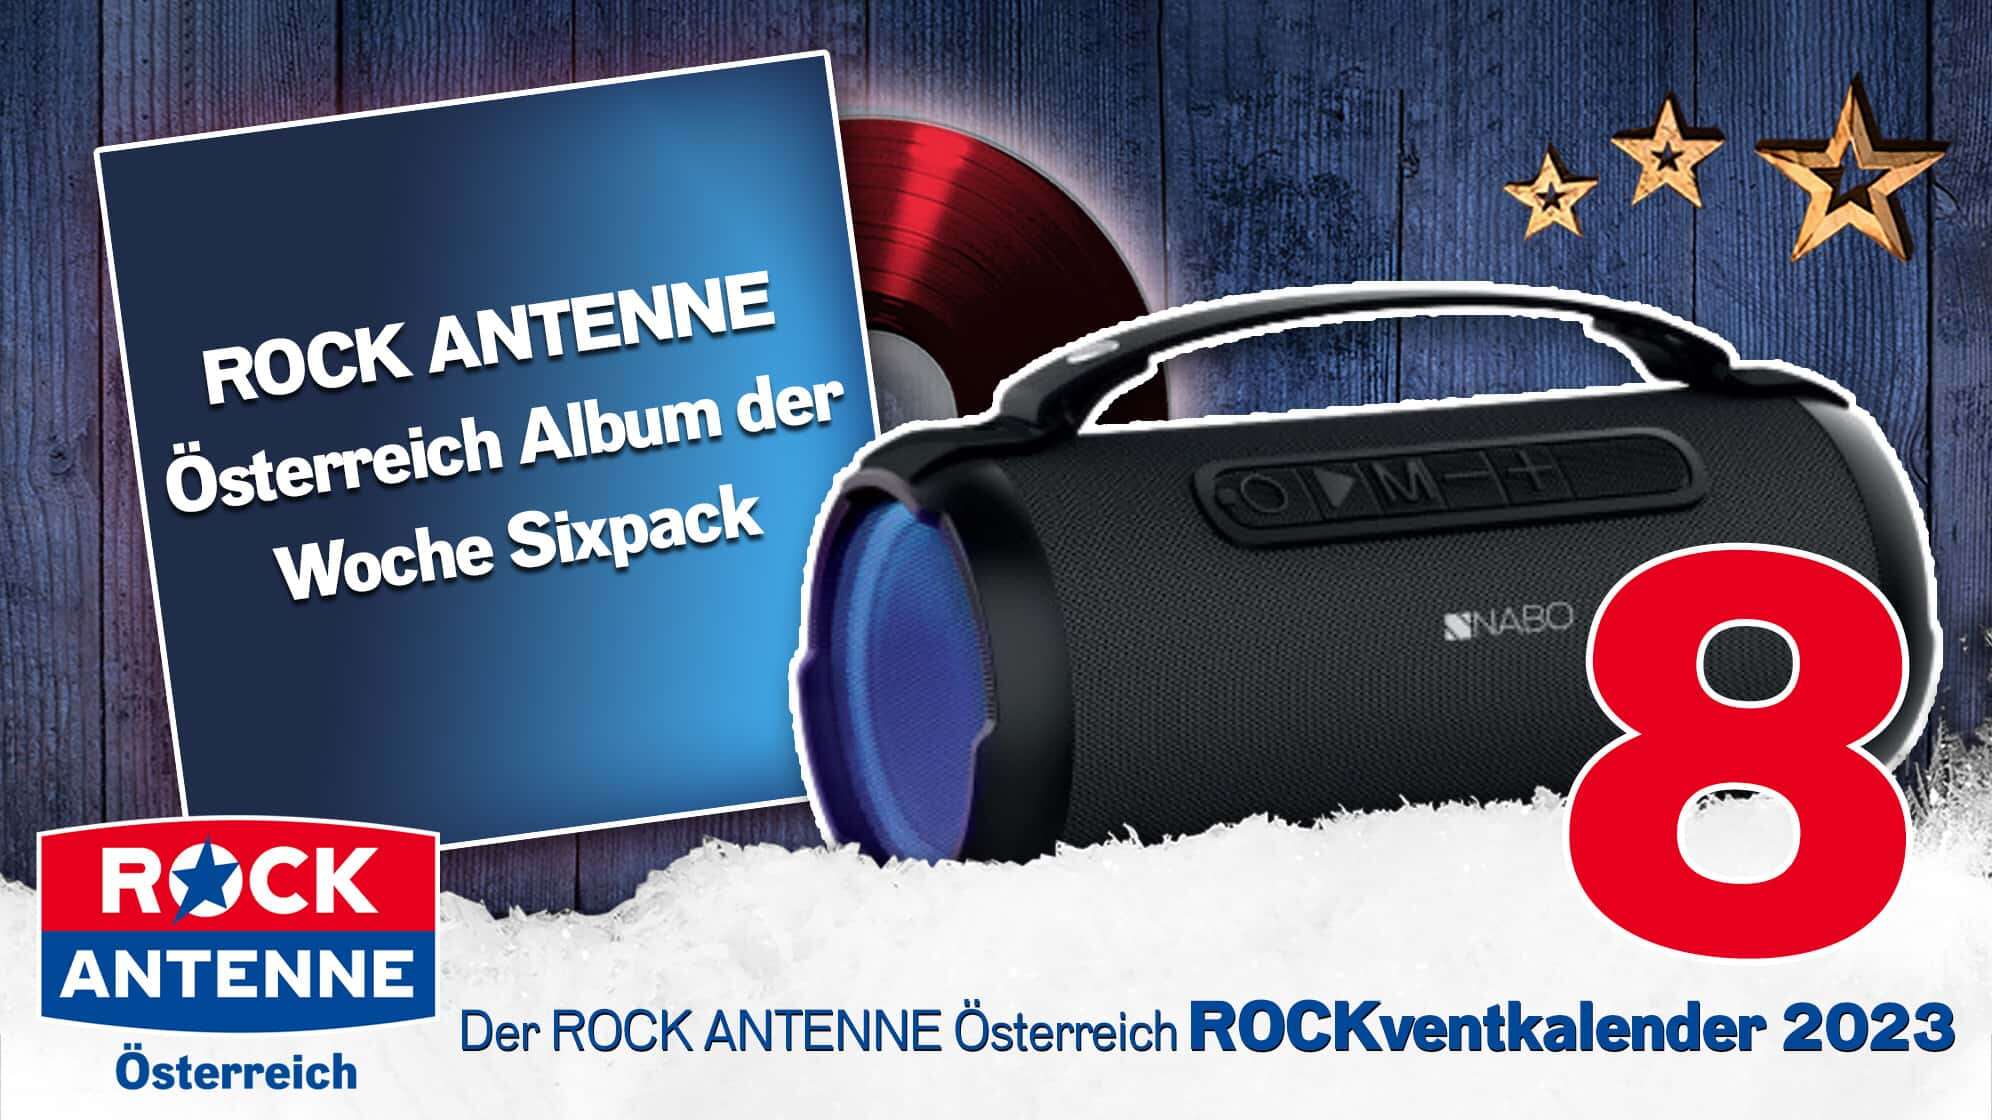 ROCK ANTENNE Österreich Rockventkalender Türchen 8: Ein ROCK ANTENNE Österreich Album der Woche-Sixpack und dazu eine Bluetooth Boombox von NABO